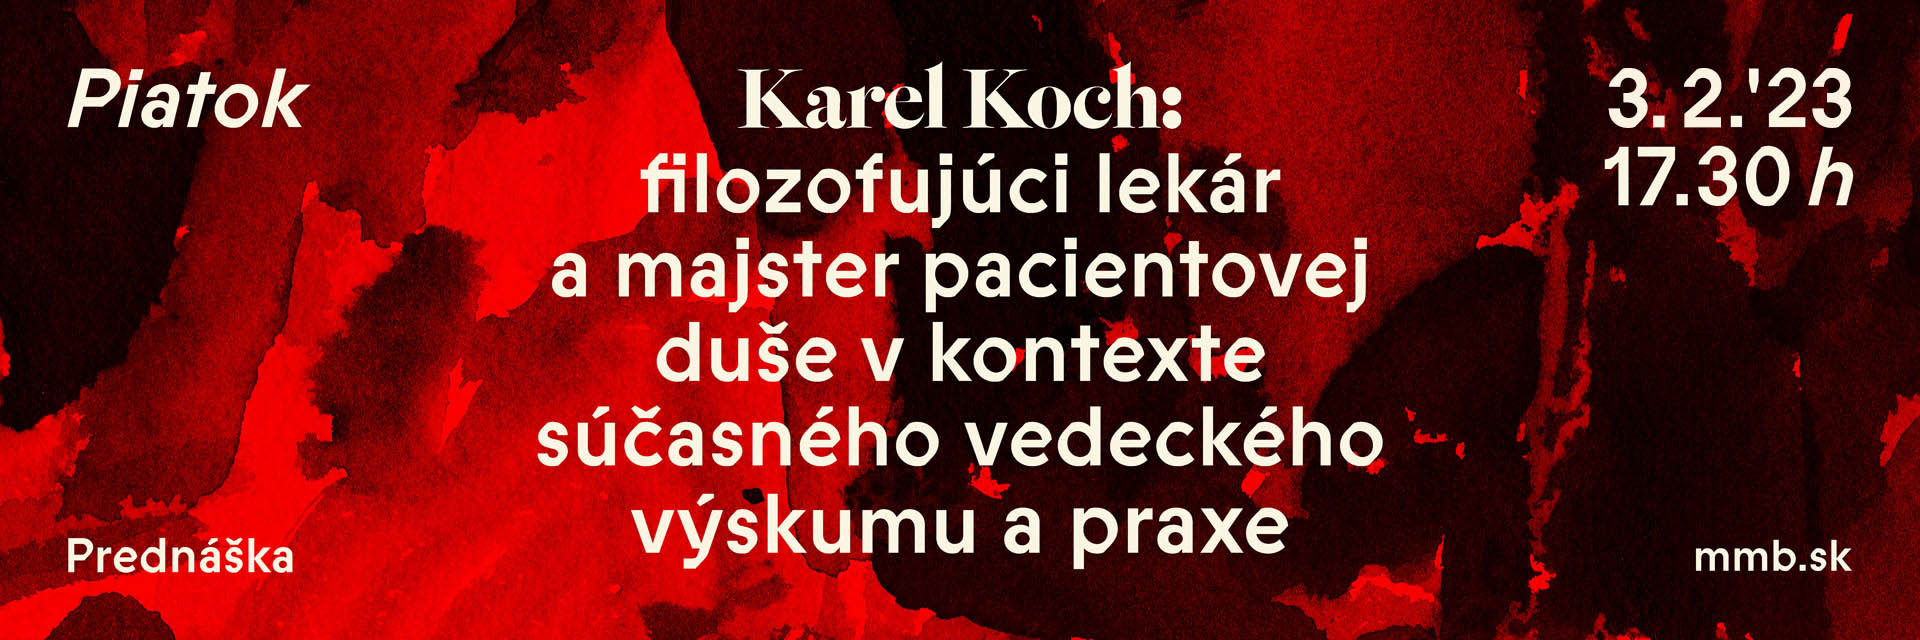 Karel Koch: filozofujúci lekár a majster pacientovej duše v kontexte súčasného vedeckého výskumu a praxe 